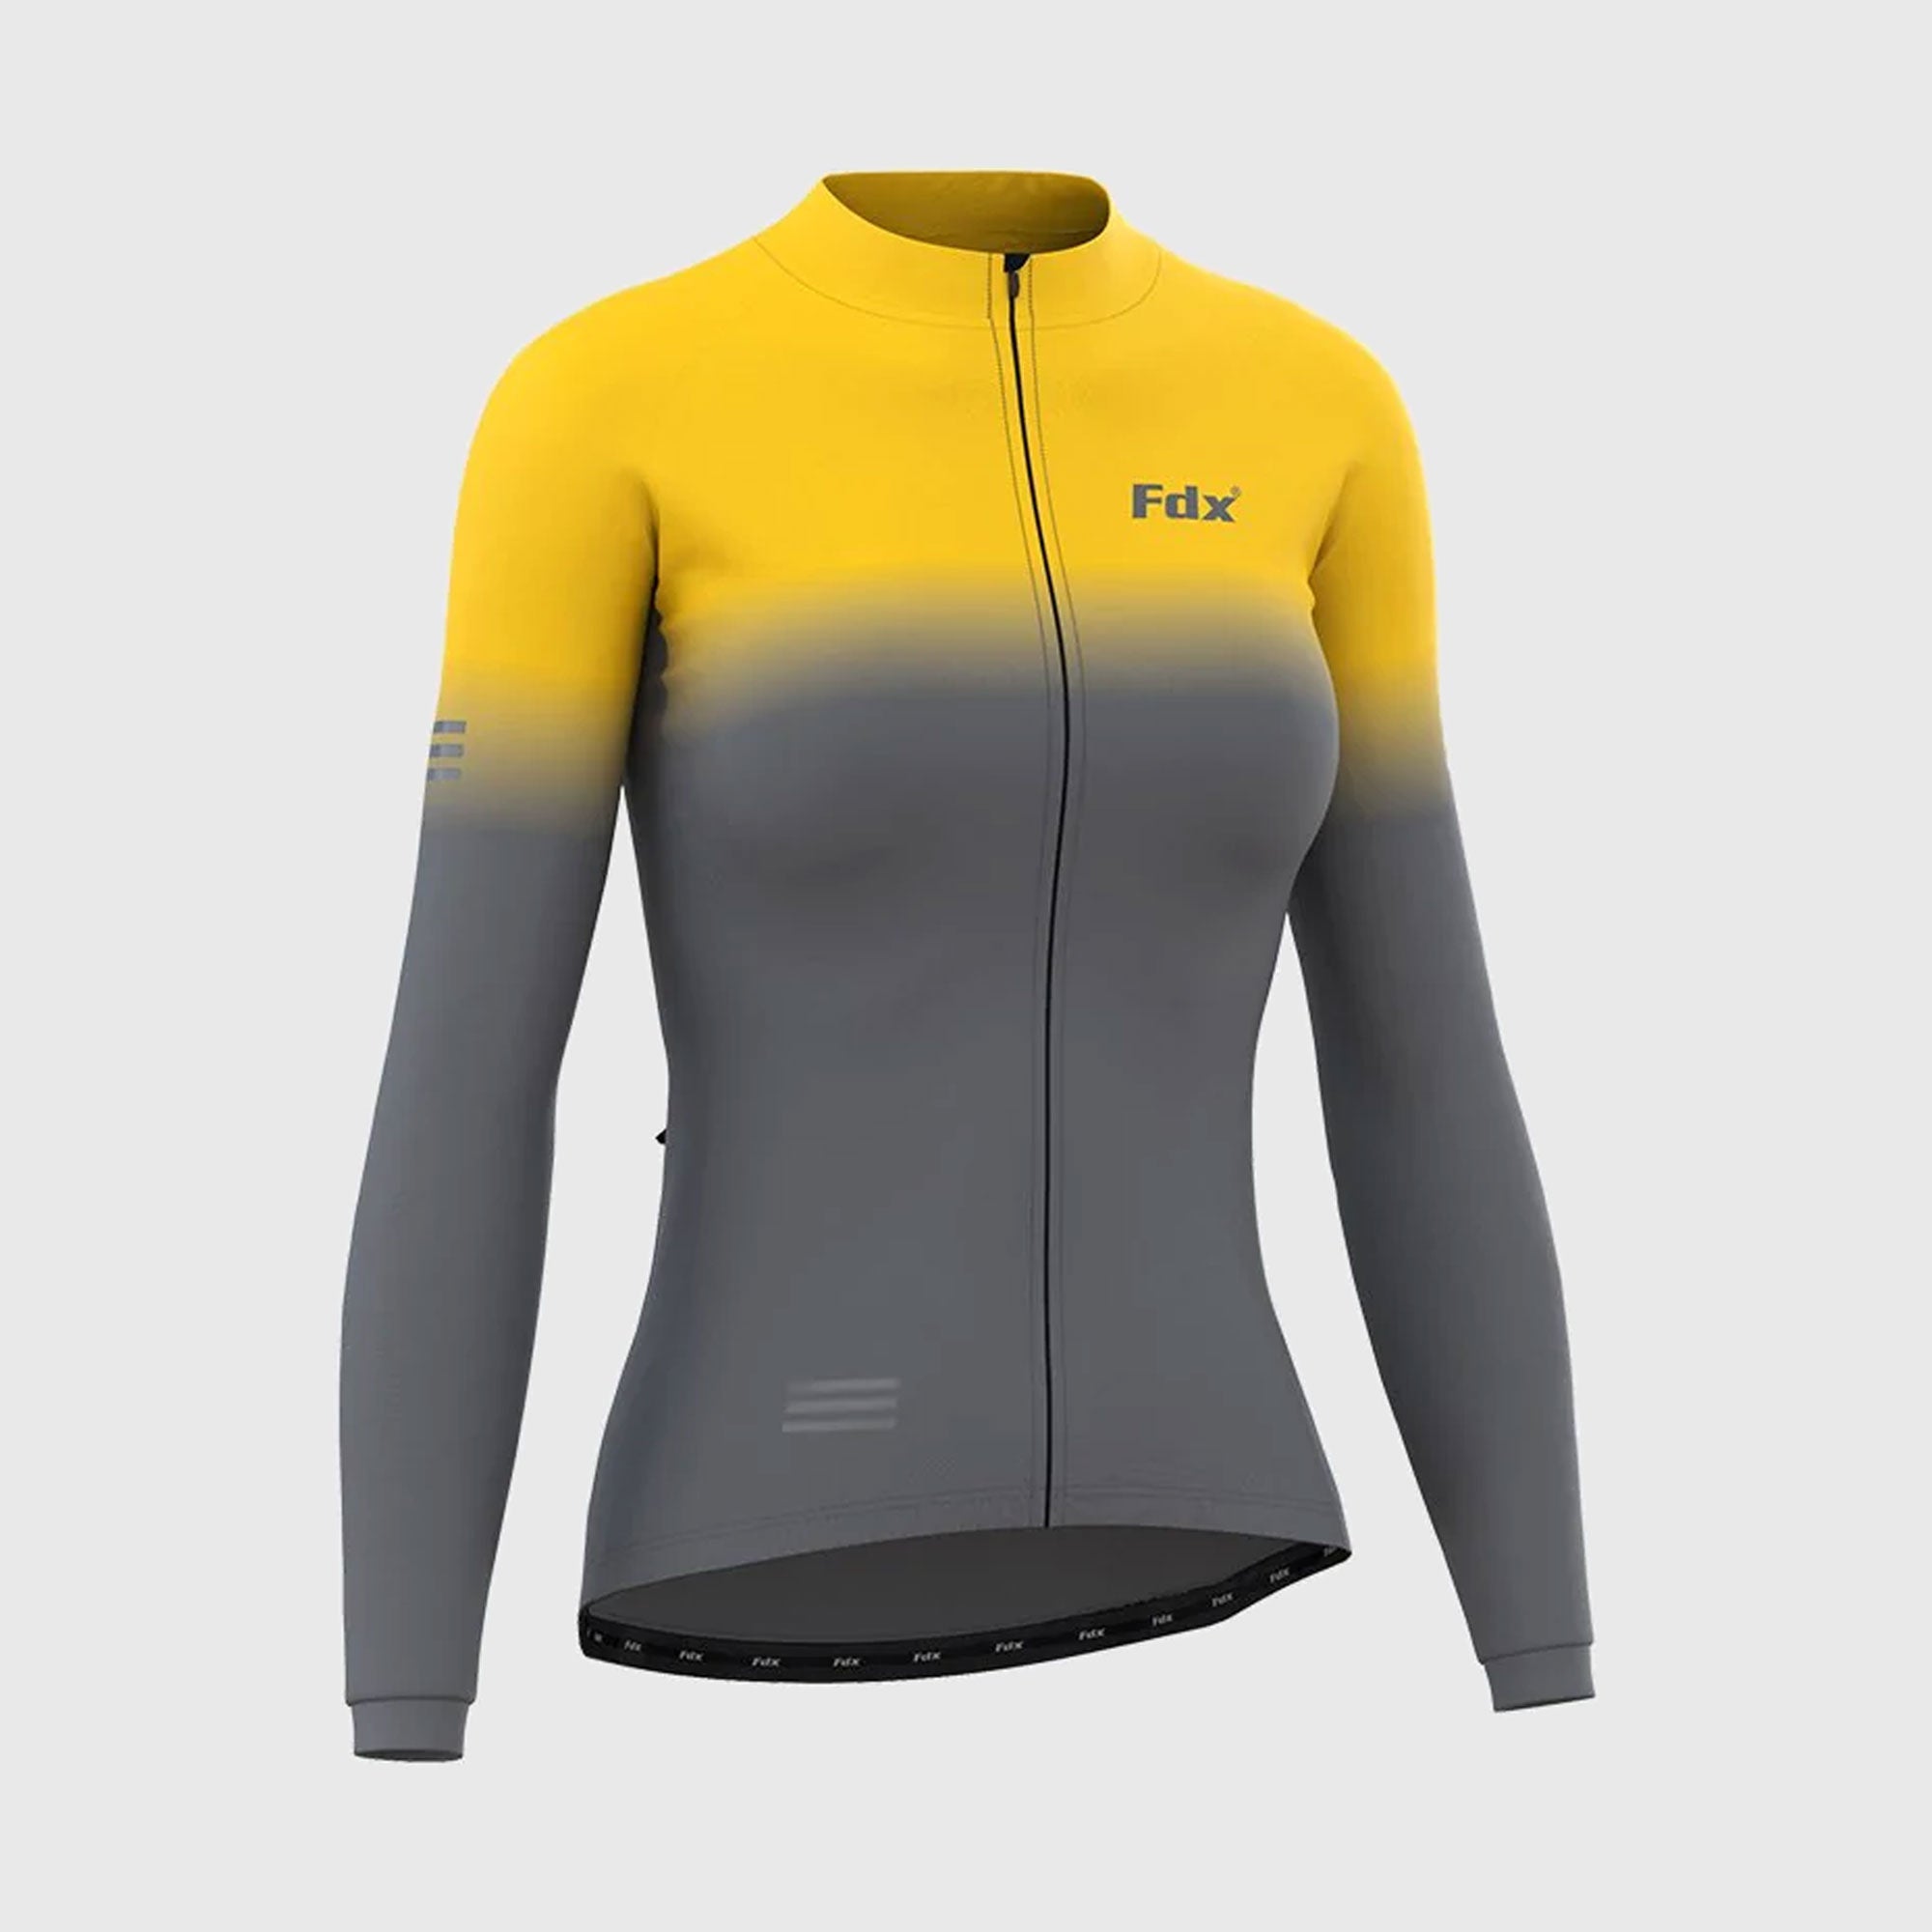 Fdx Duo Women's Yellow / Grey Long Sleeve Winter Cycling Jersey